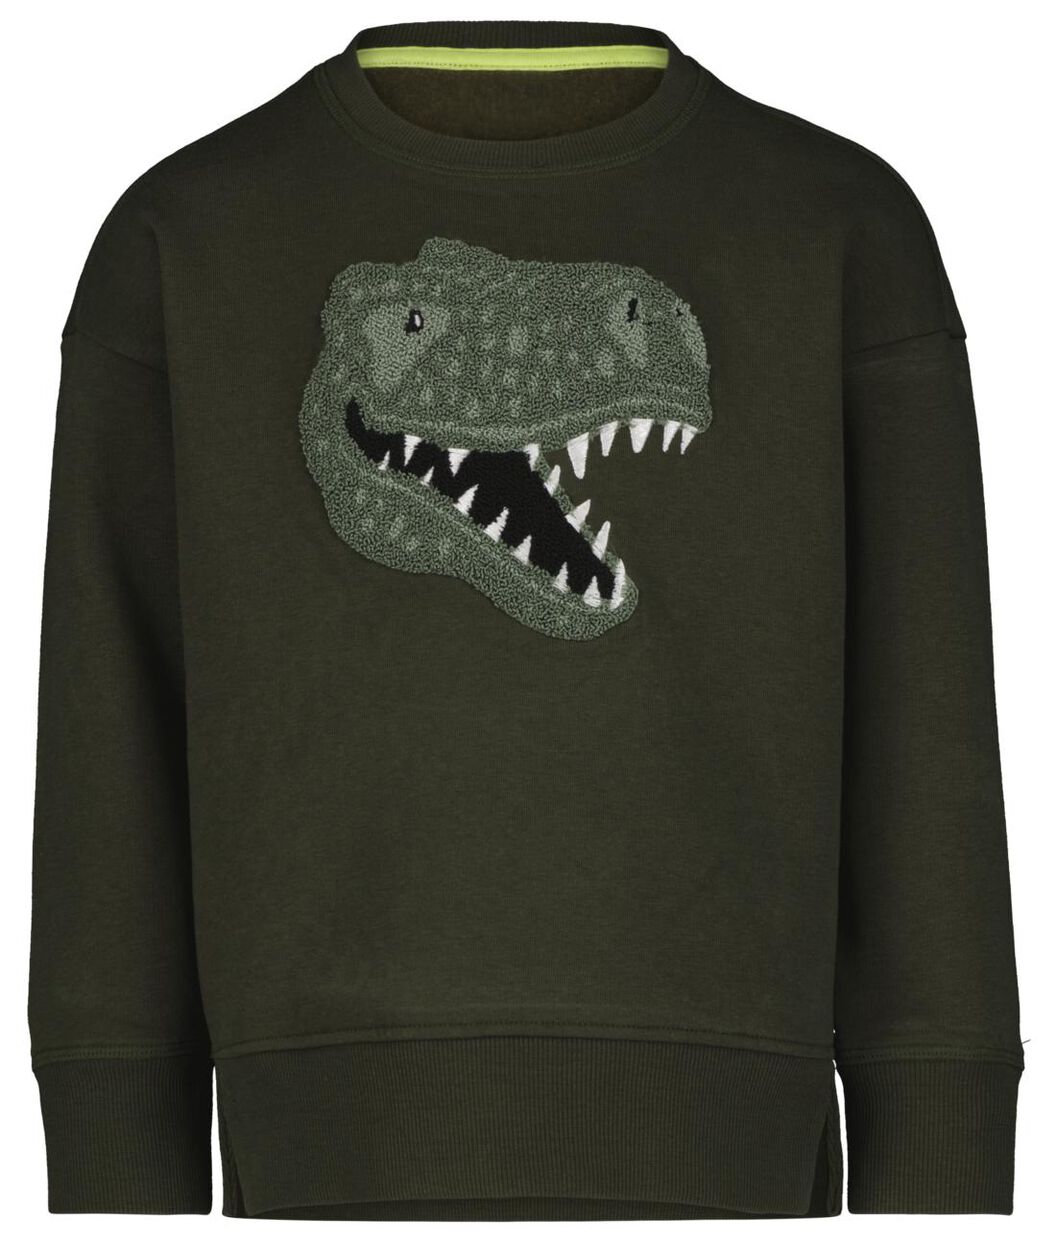 Politiebureau Onbevreesd progressief children's sweater dinosaur army green - HEMA